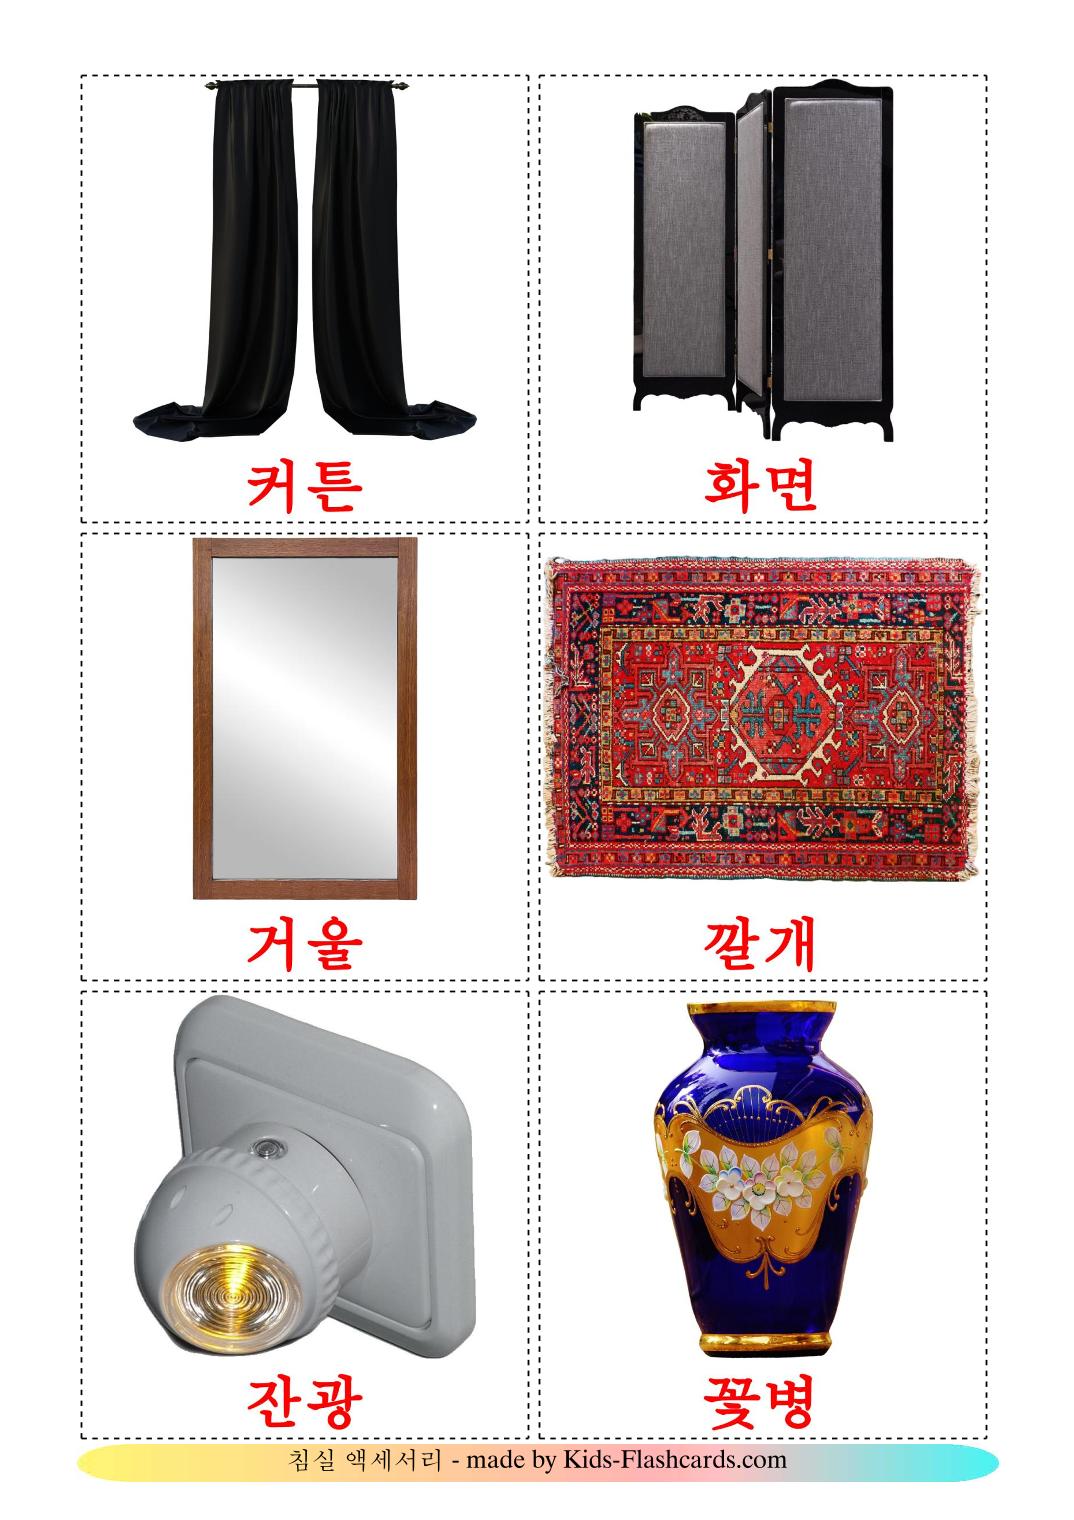 Accesorios de Dormitorio - 15 fichas de coreano para imprimir gratis 